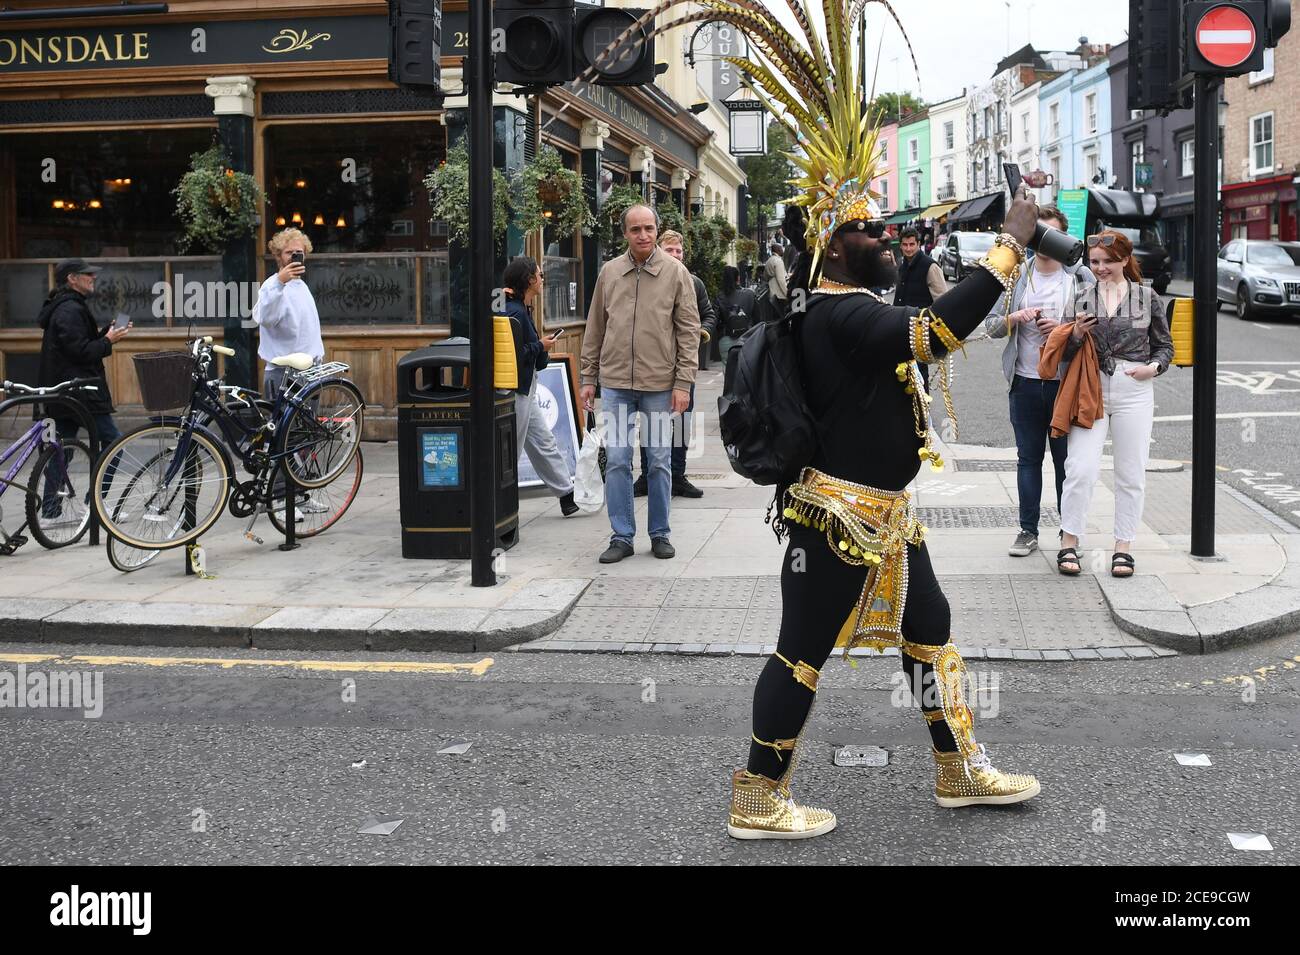 Ein Mann in Kostümen, der am Online-Notting Hill Carnival im Norden Londons teilnehmen wollte, nachdem der Karneval von 2020 wegen der Coronavirus-Pandemie abgesagt wurde, wobei die Ereignisse online gestreamt wurden. Stockfoto